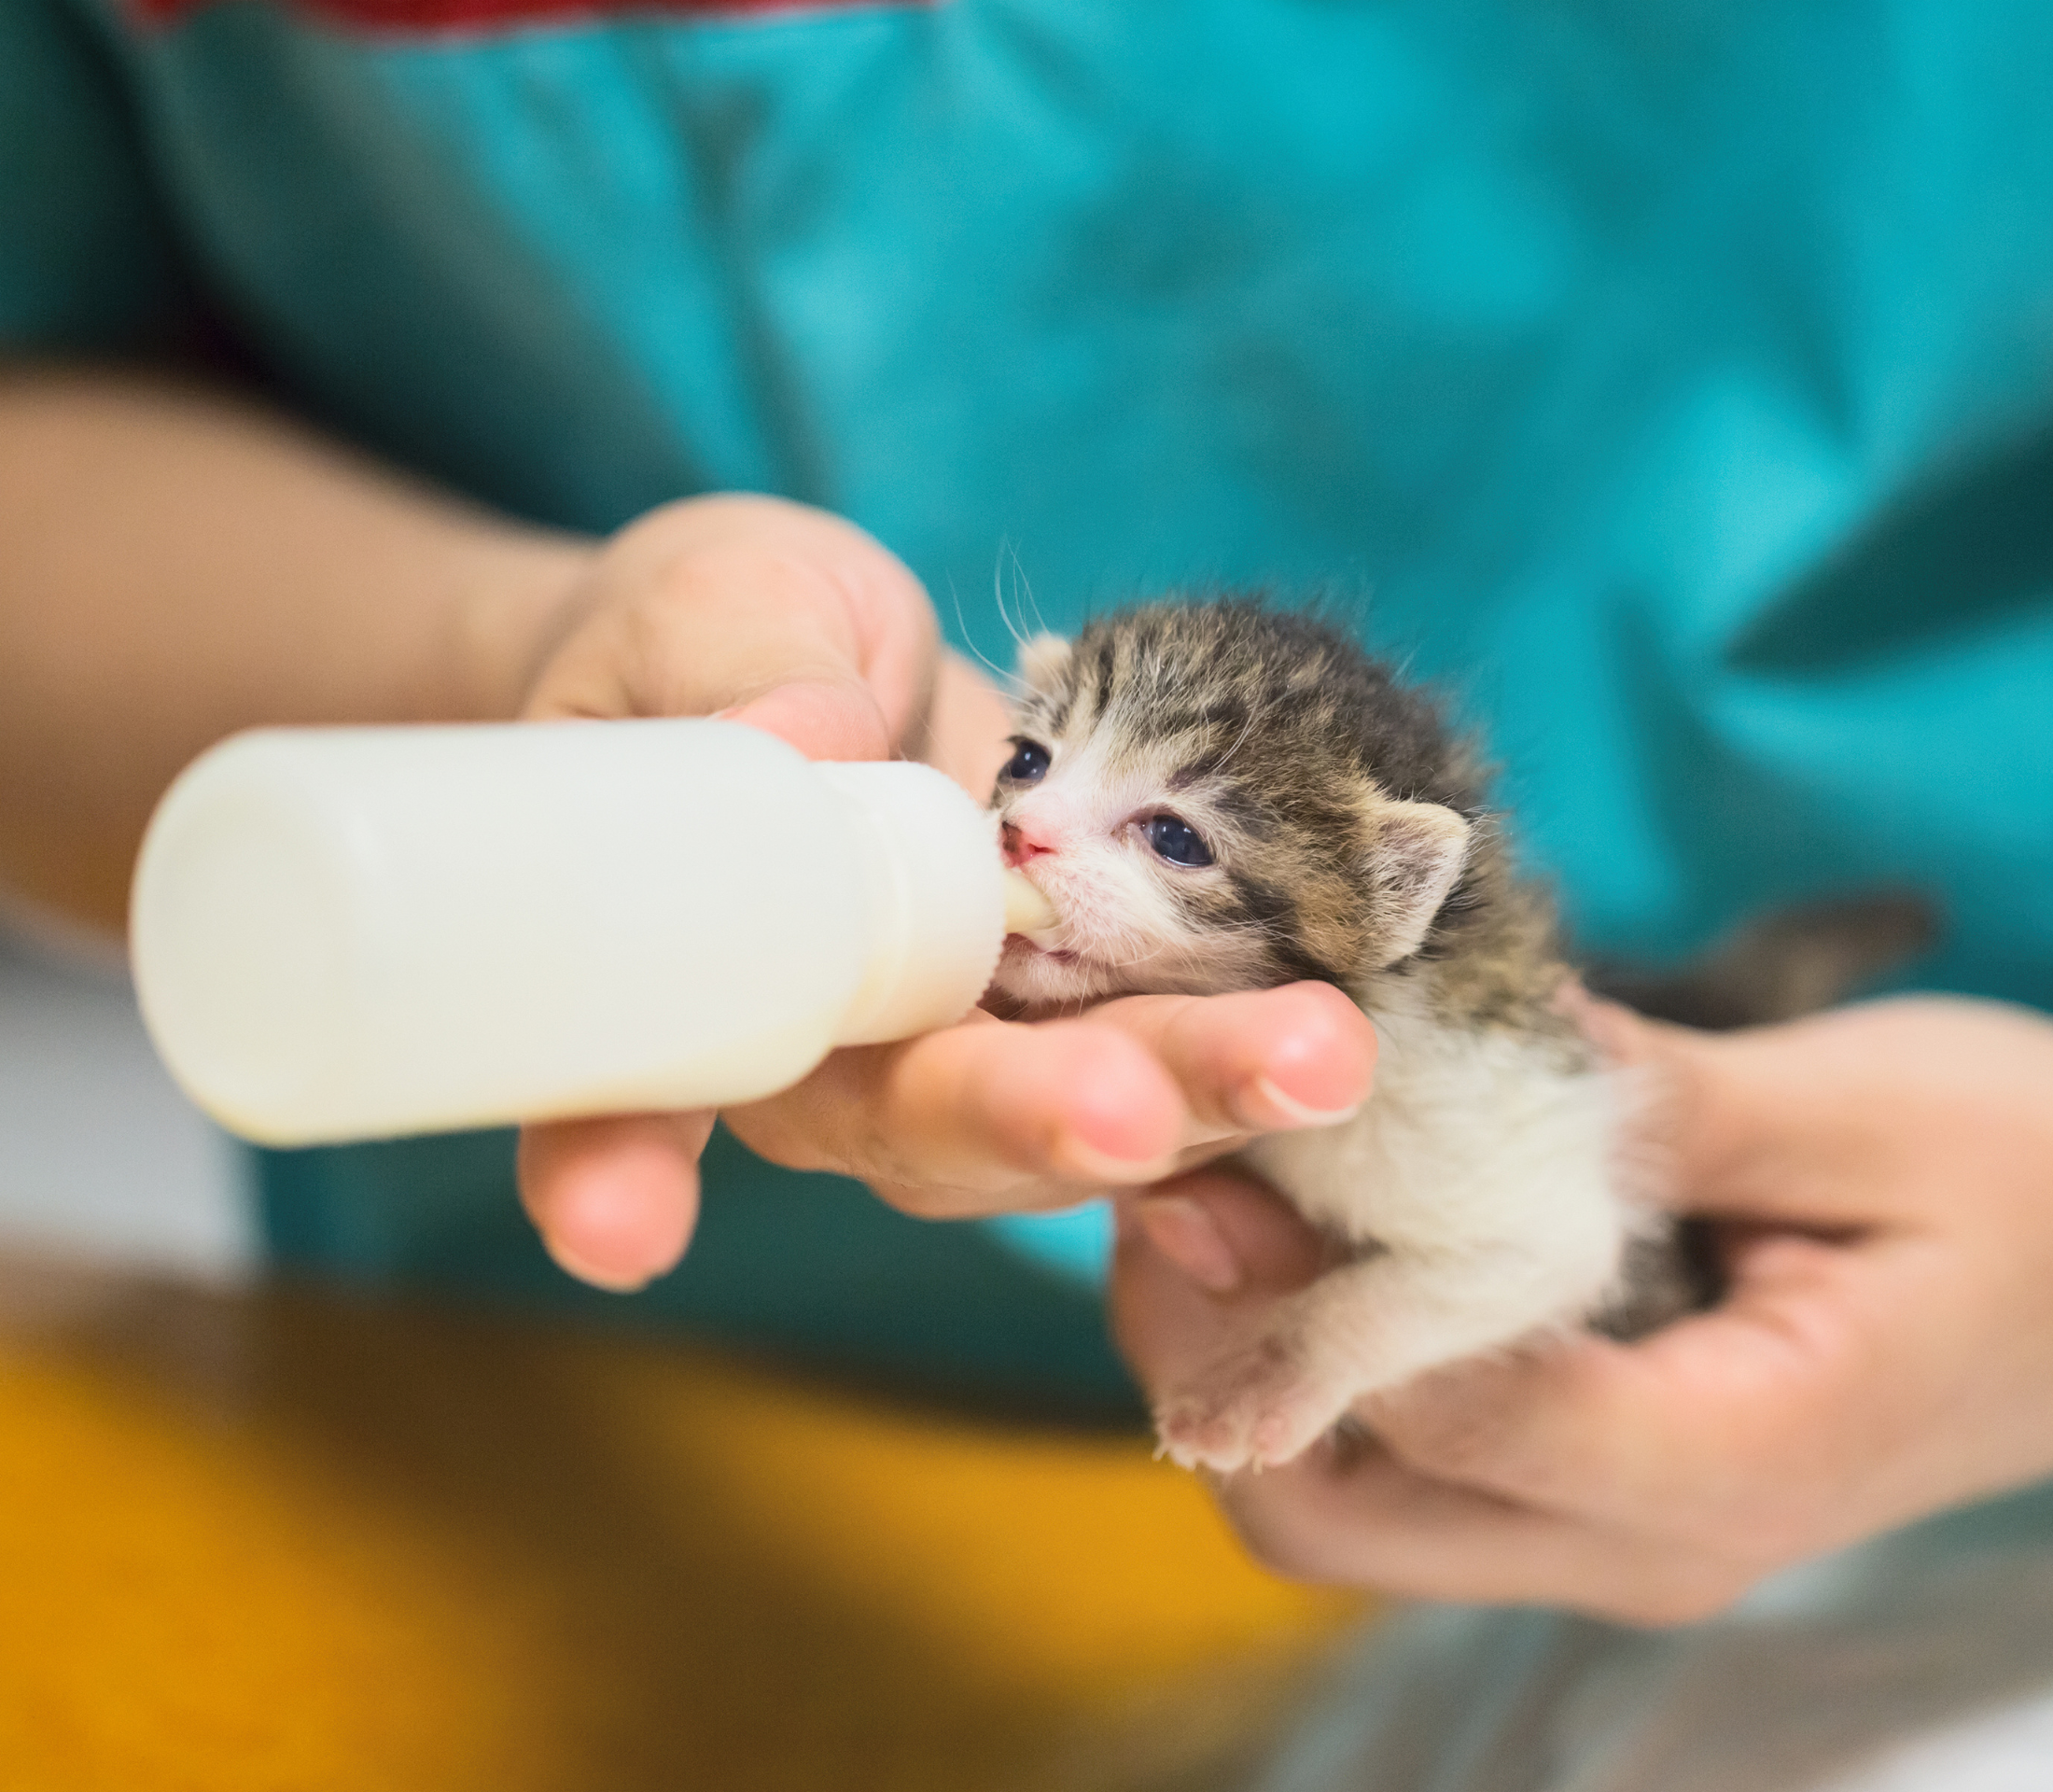 Grayish kitten sipping milk from milk bottle